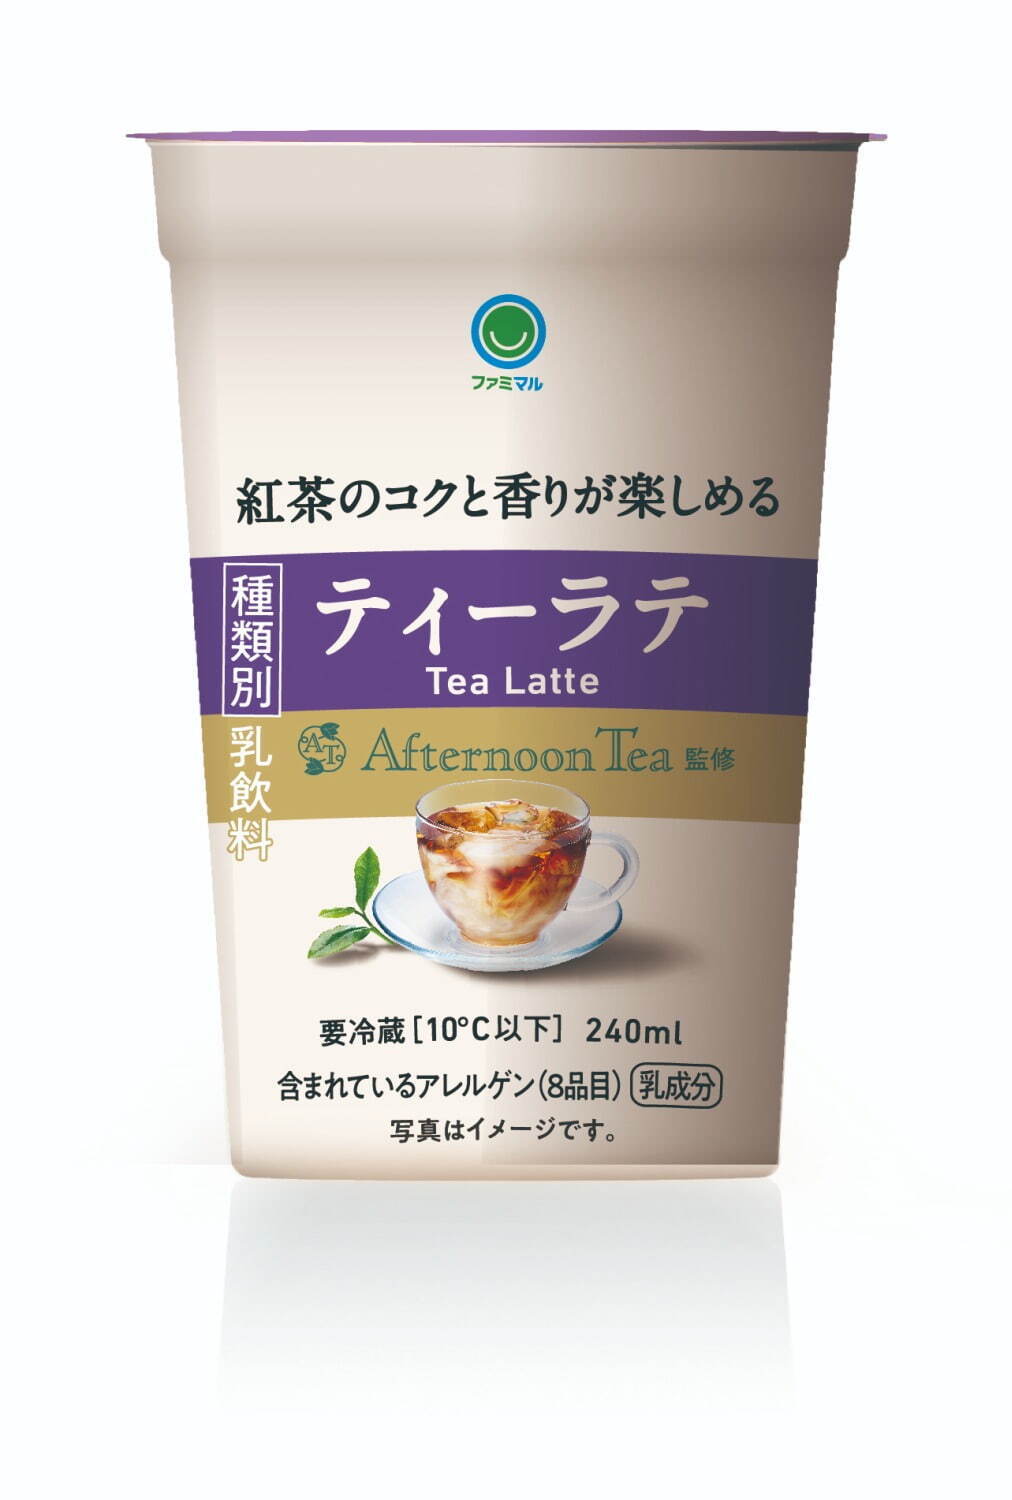 「ファミマル Afternoon Tea監修 ティーラテ」178円